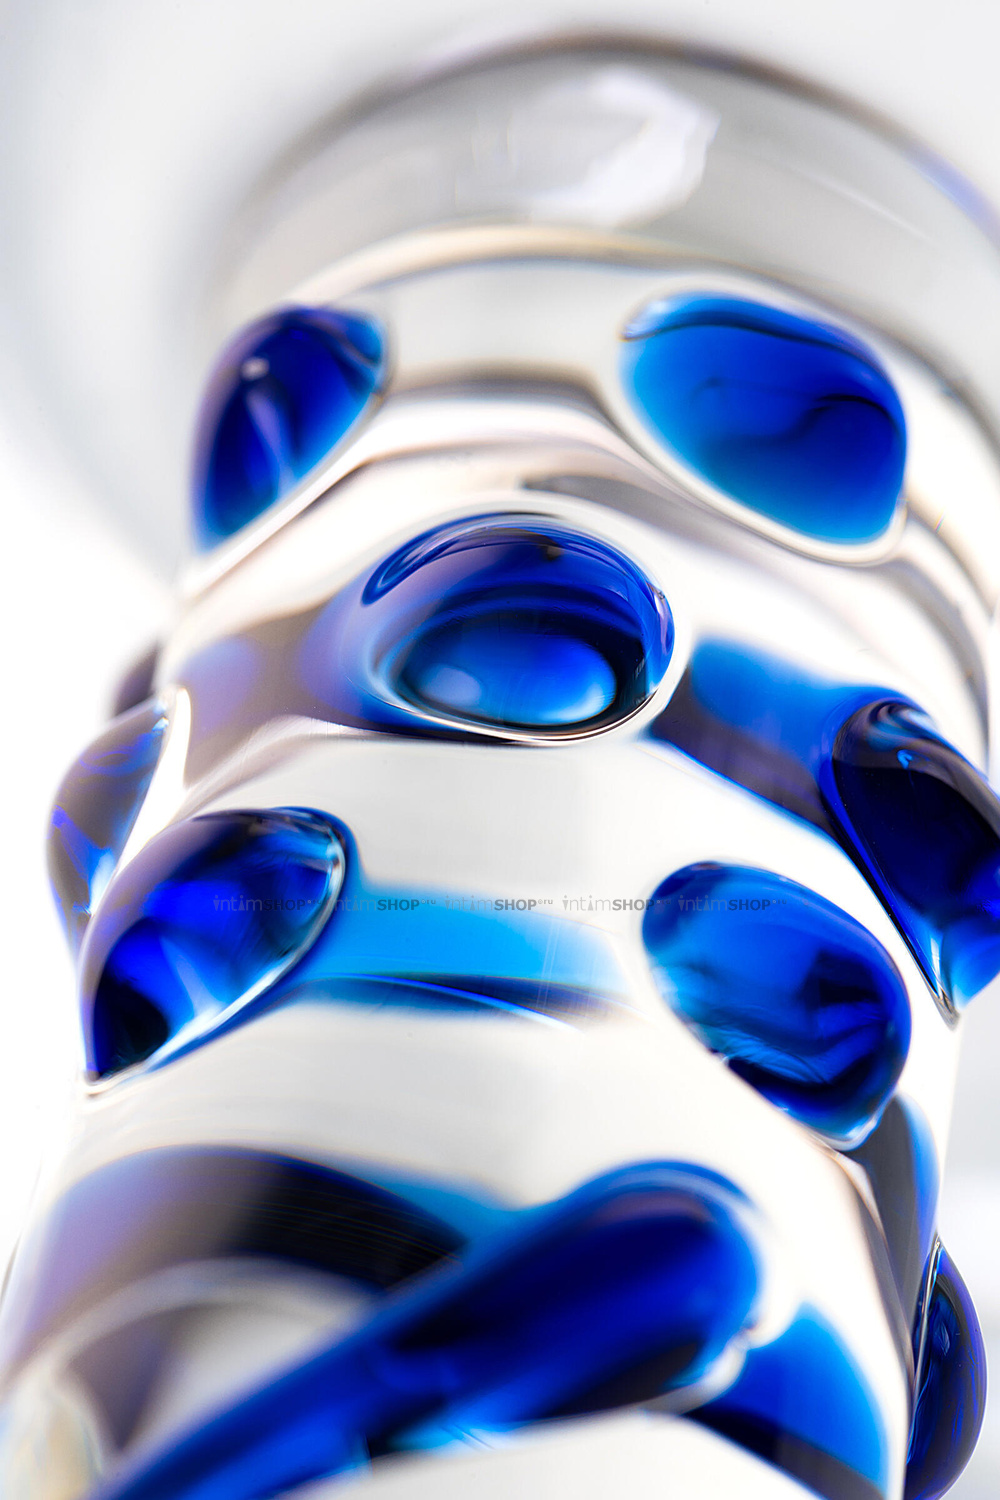 Фаллоимитатор Sexus Glass рельефный, бесцветный, 18 см